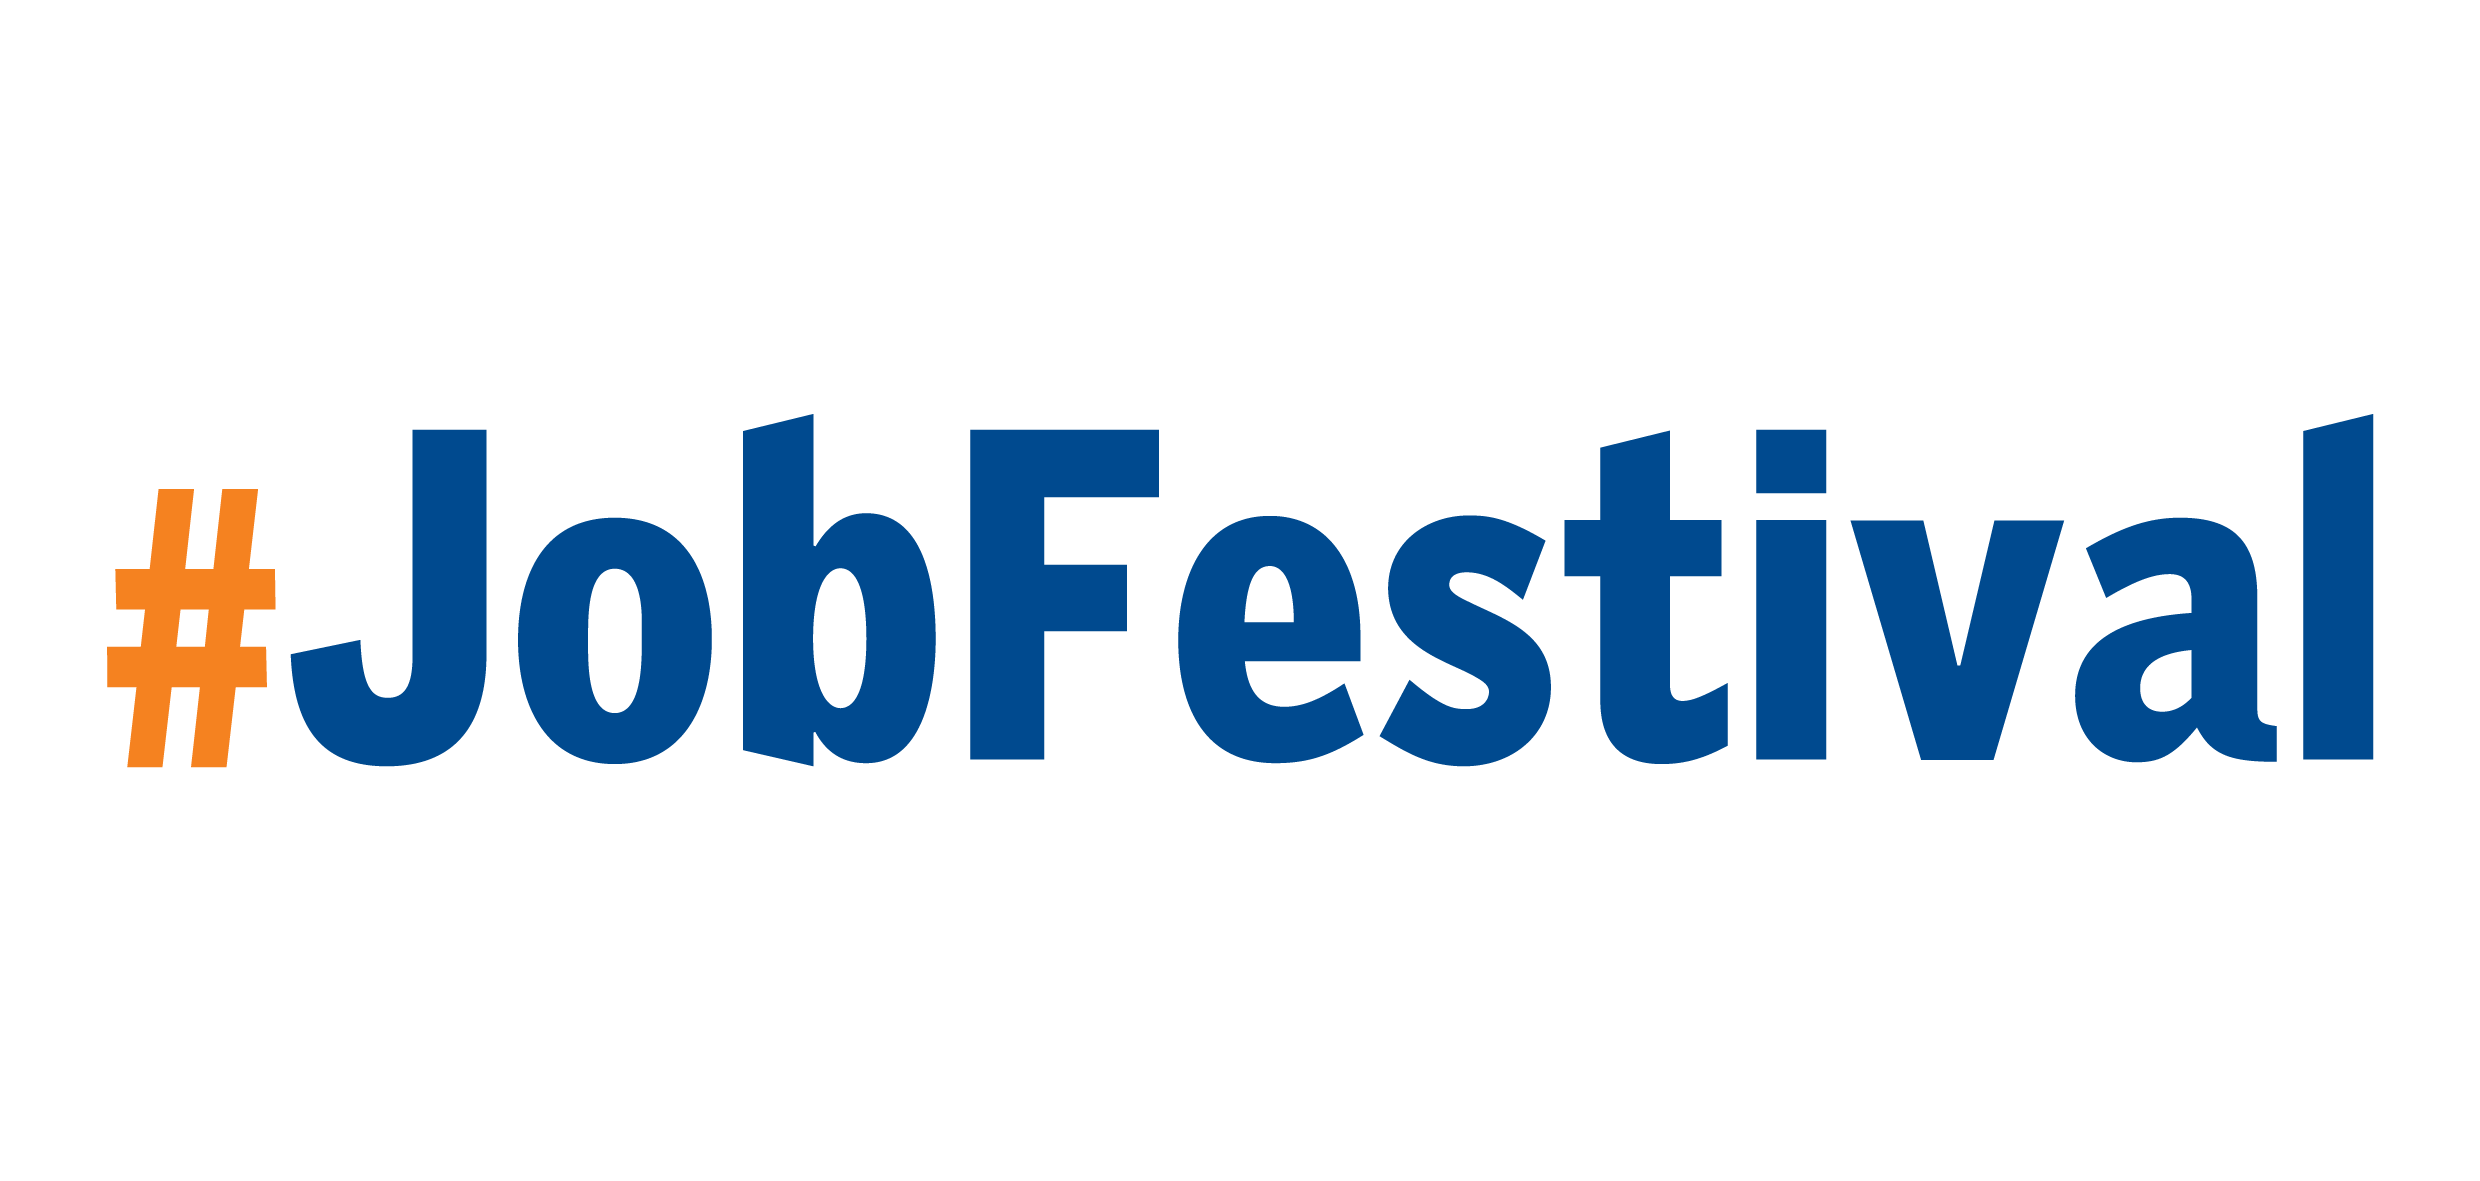 #JobFestival logo png